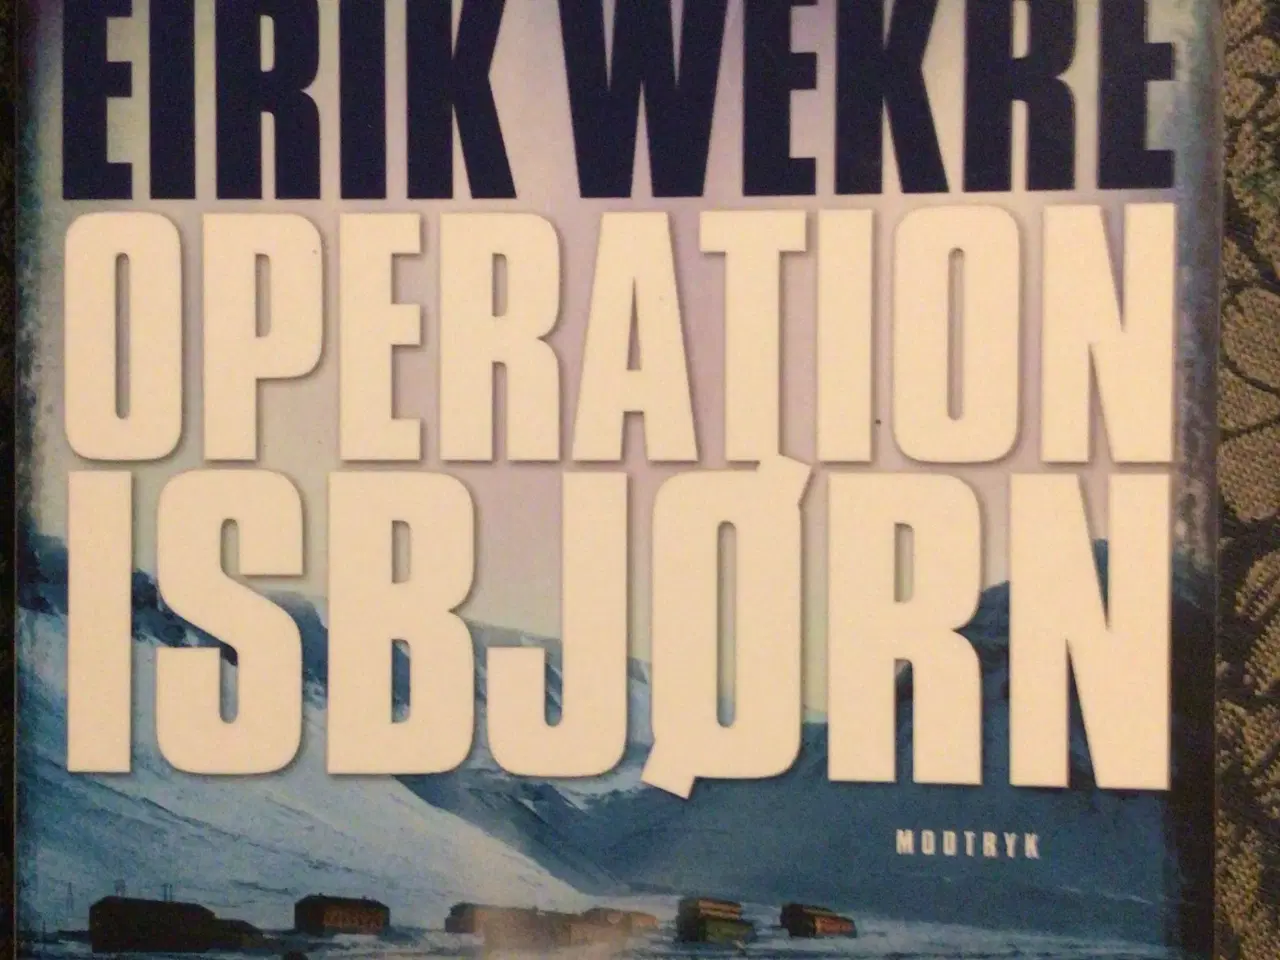 Billede 3 - Eirik  operation Isbjørn, operation Snehvide